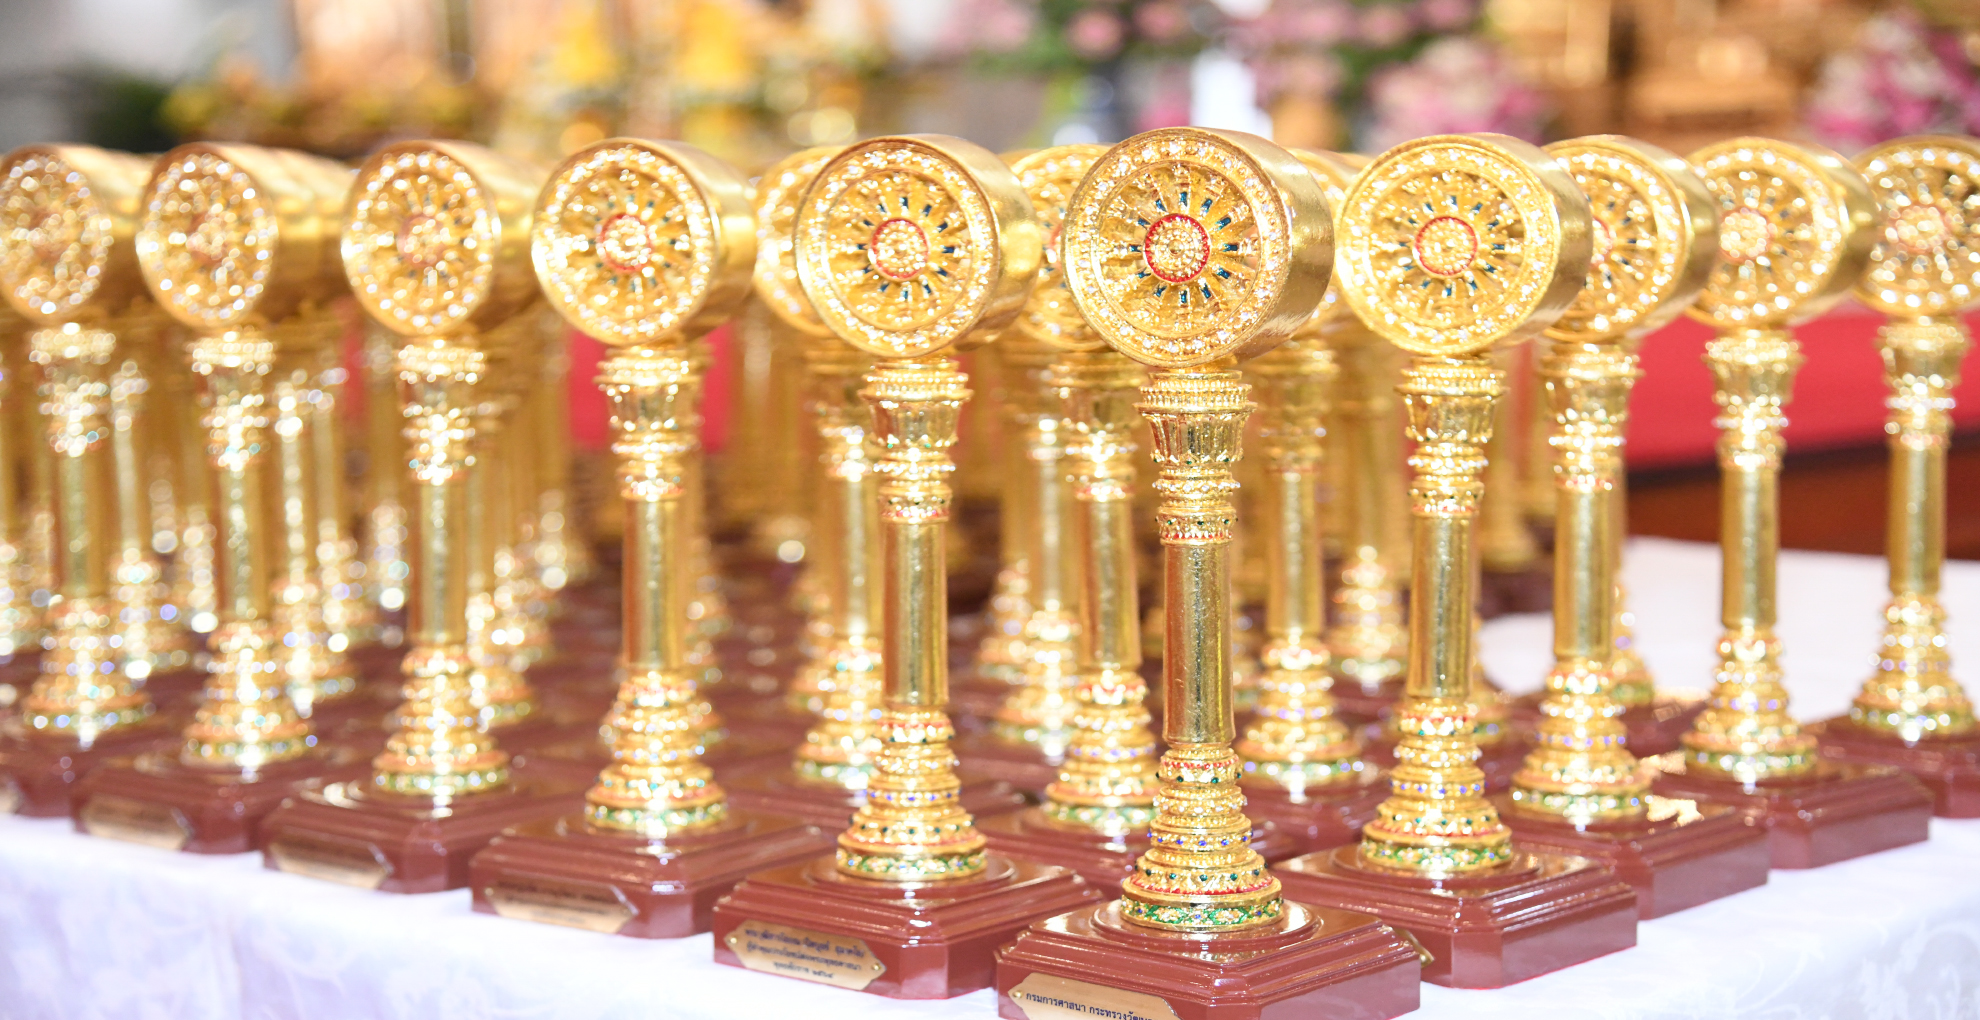 4 เมษายน 66 วธ.จัดงานยิ่งใหญ่พิธีพระราชทาน “เสาเสมาธรรมจักร” รางวัลแห่งเกียรติยศสำหรับชาวพุทธประเทศไทย